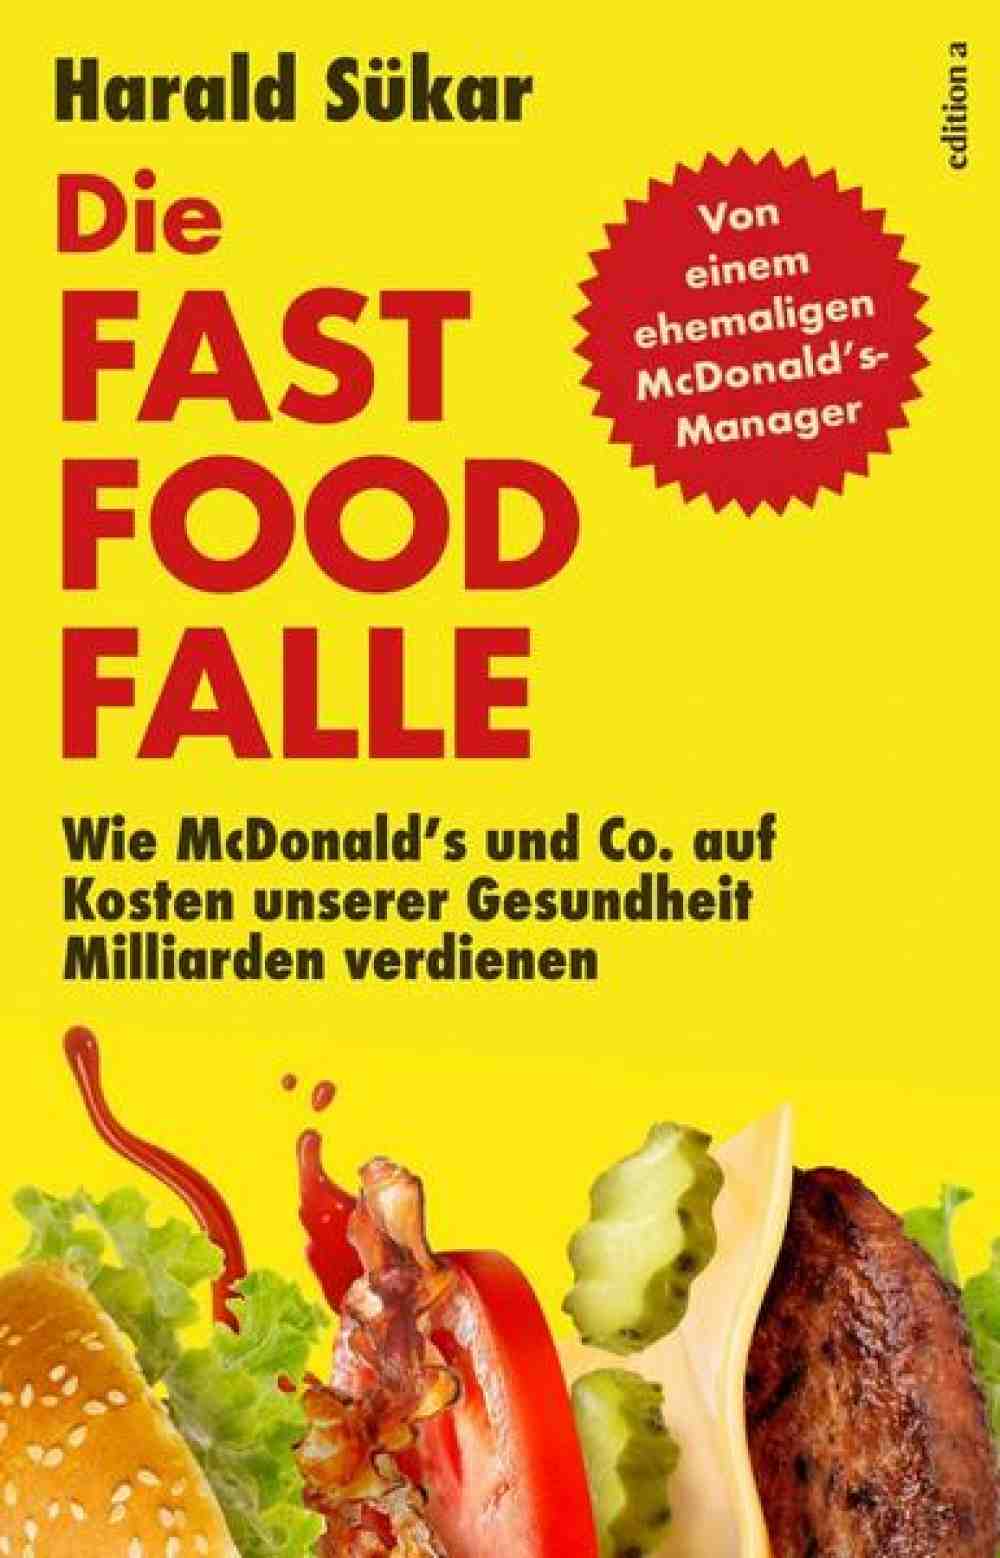 Anzeige: Lesetipps für Gütersloh: Harald Sükar: »Geht auf keinen Fall zu McDonald’s, Burger King & Co.«